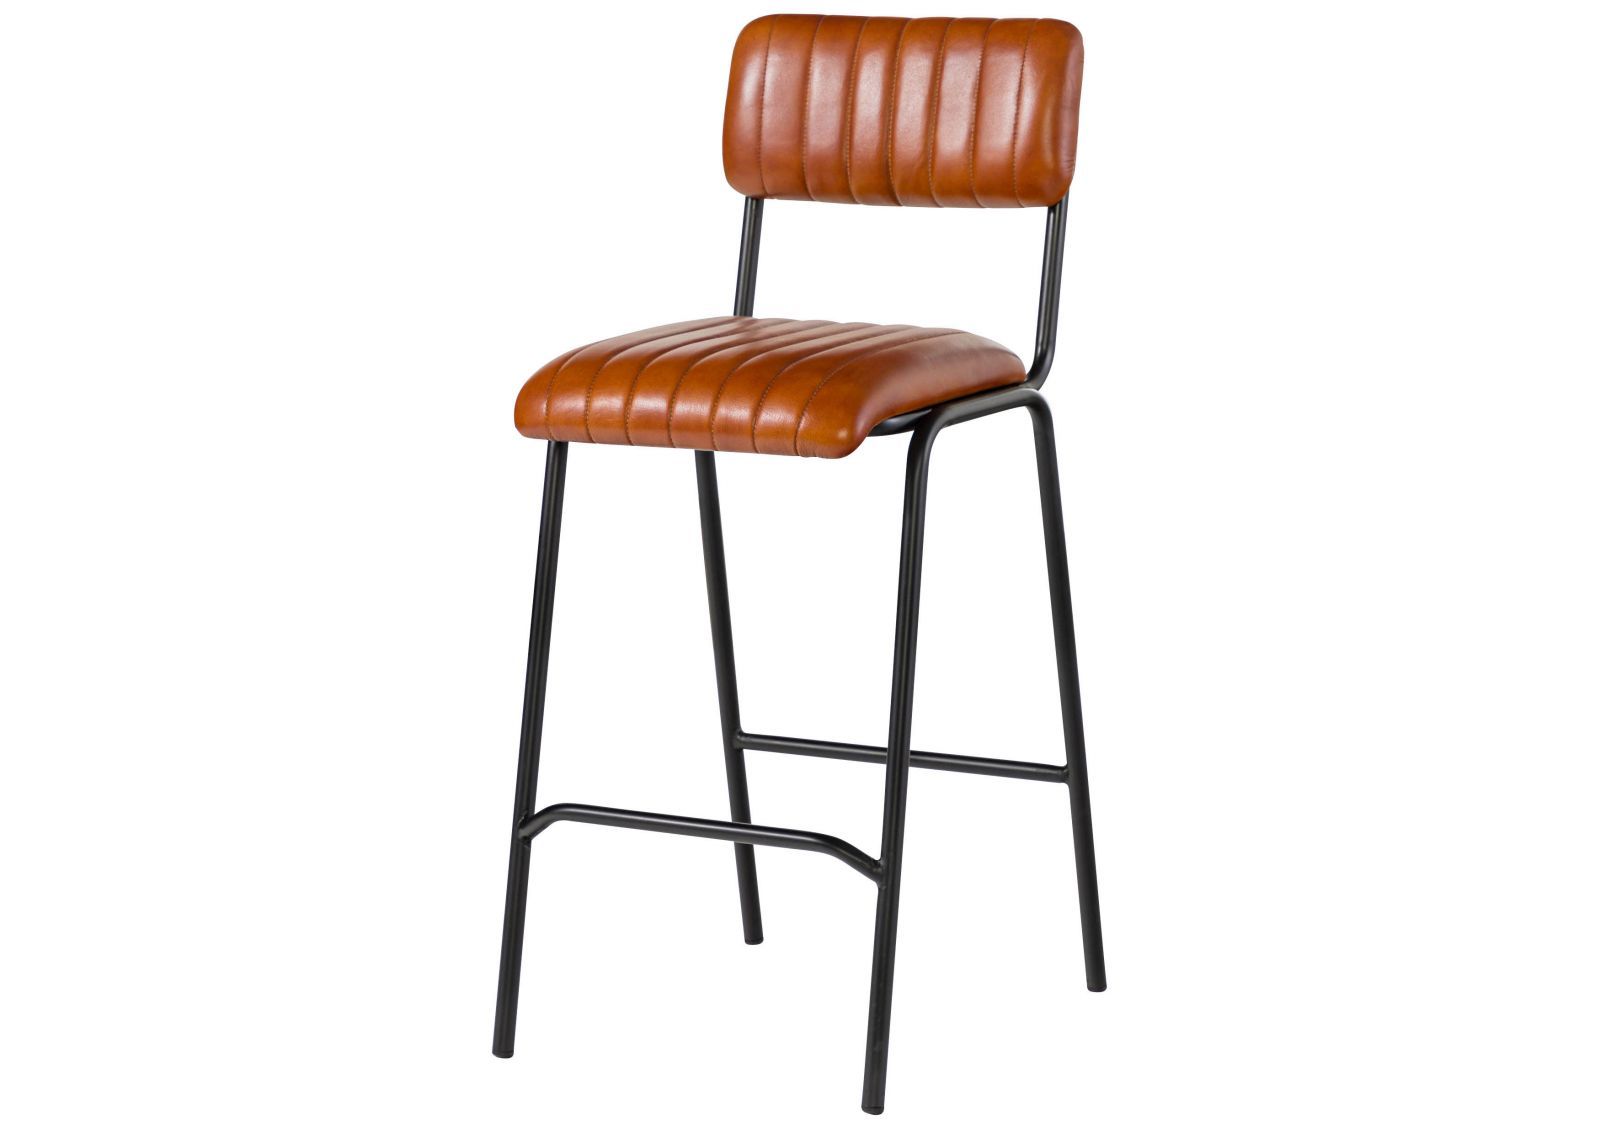 Sitzbezüge aus hochwertigem Echt-Leder für Stühle und Barhocker